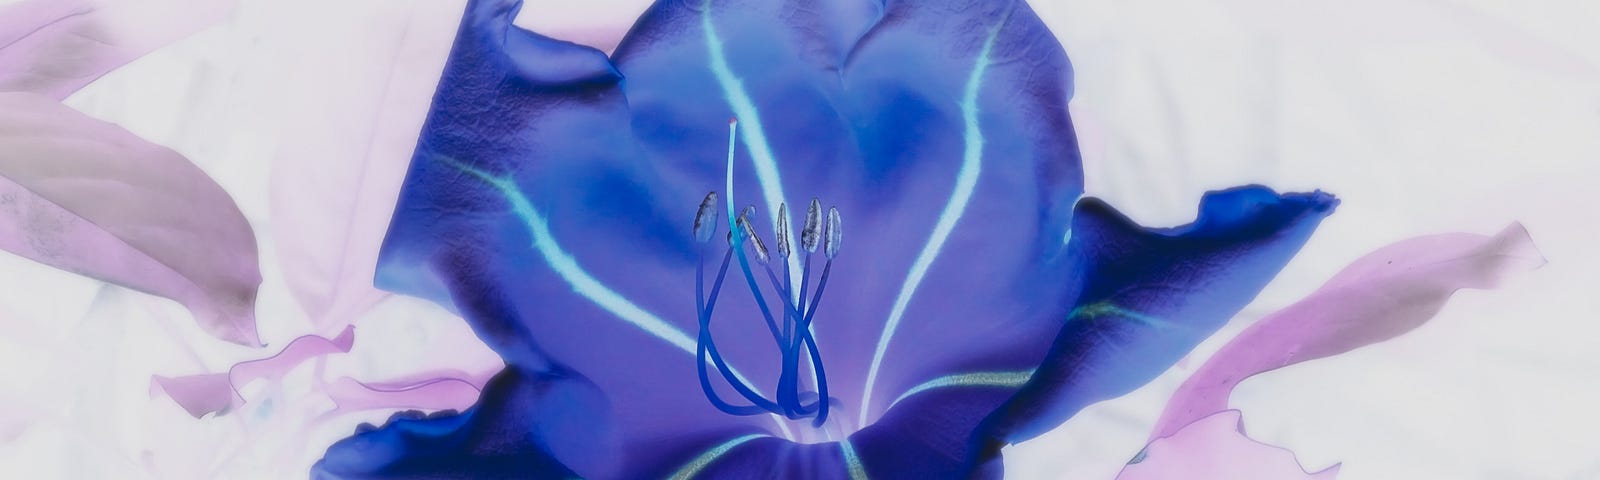 A blue flower, in negative light